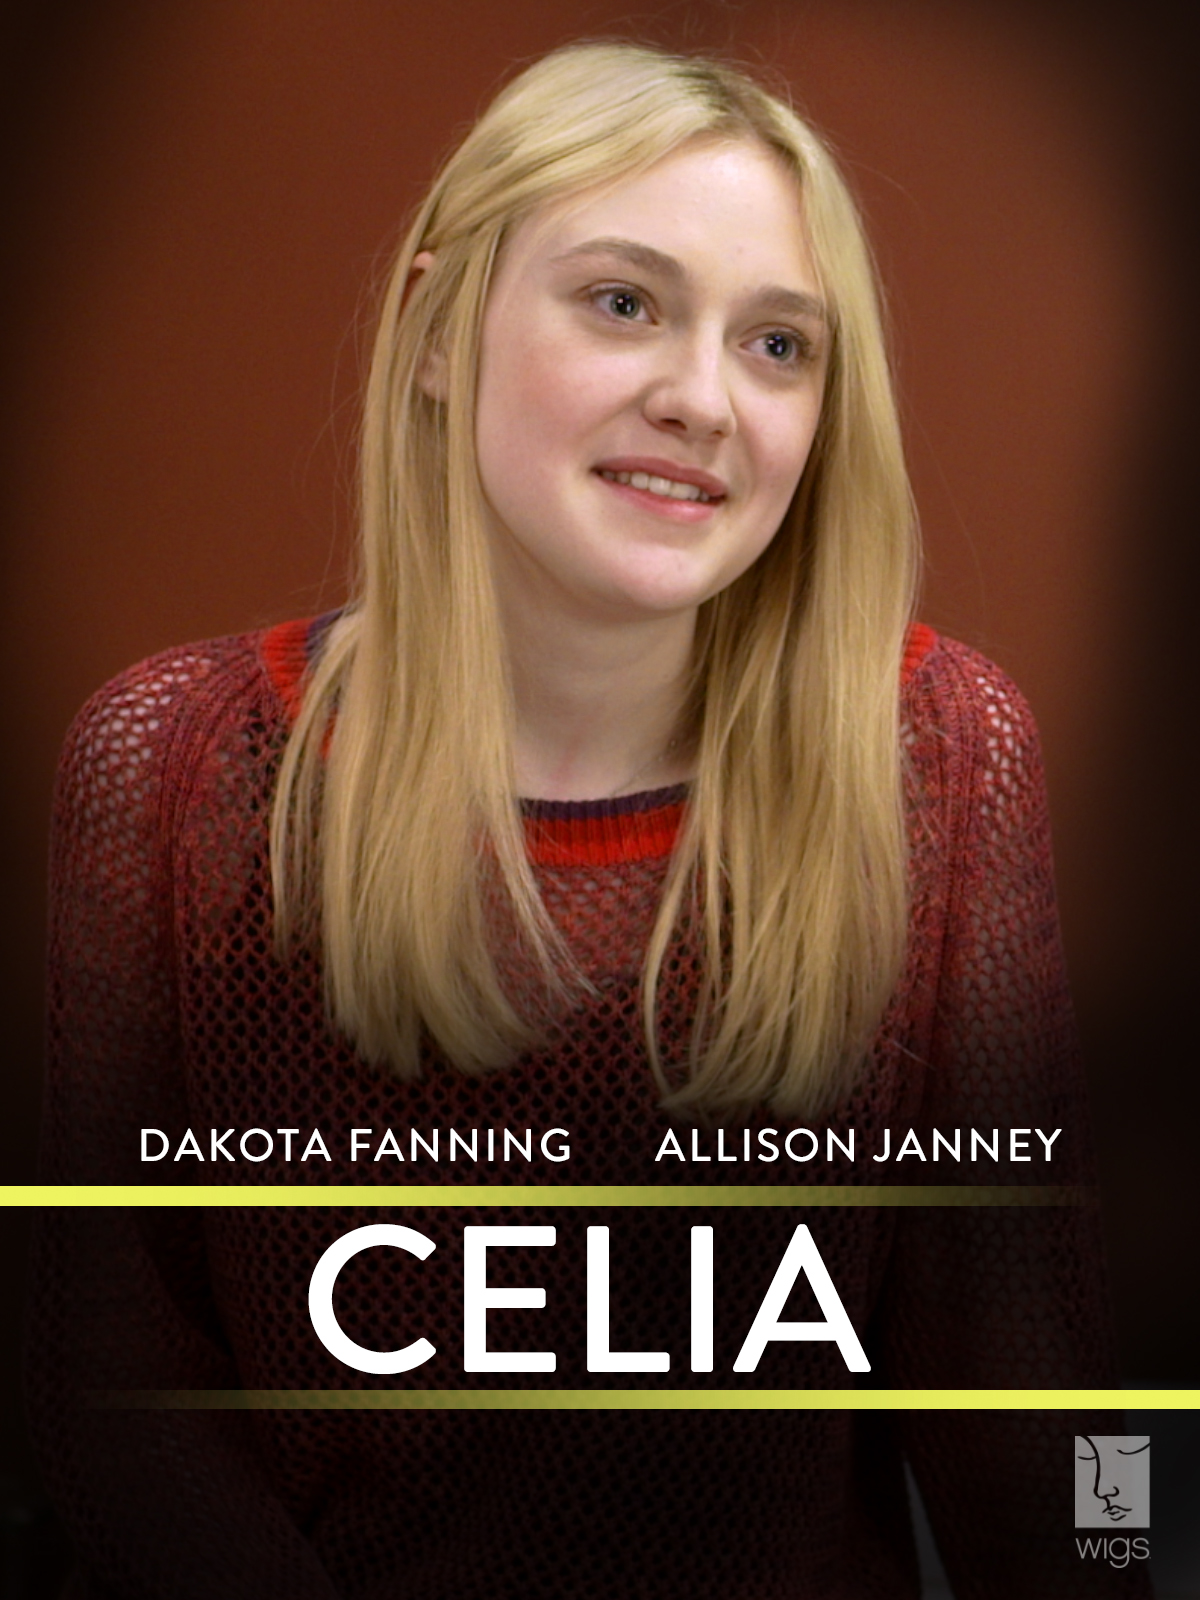 Dakota Fanning in Celia (2012)